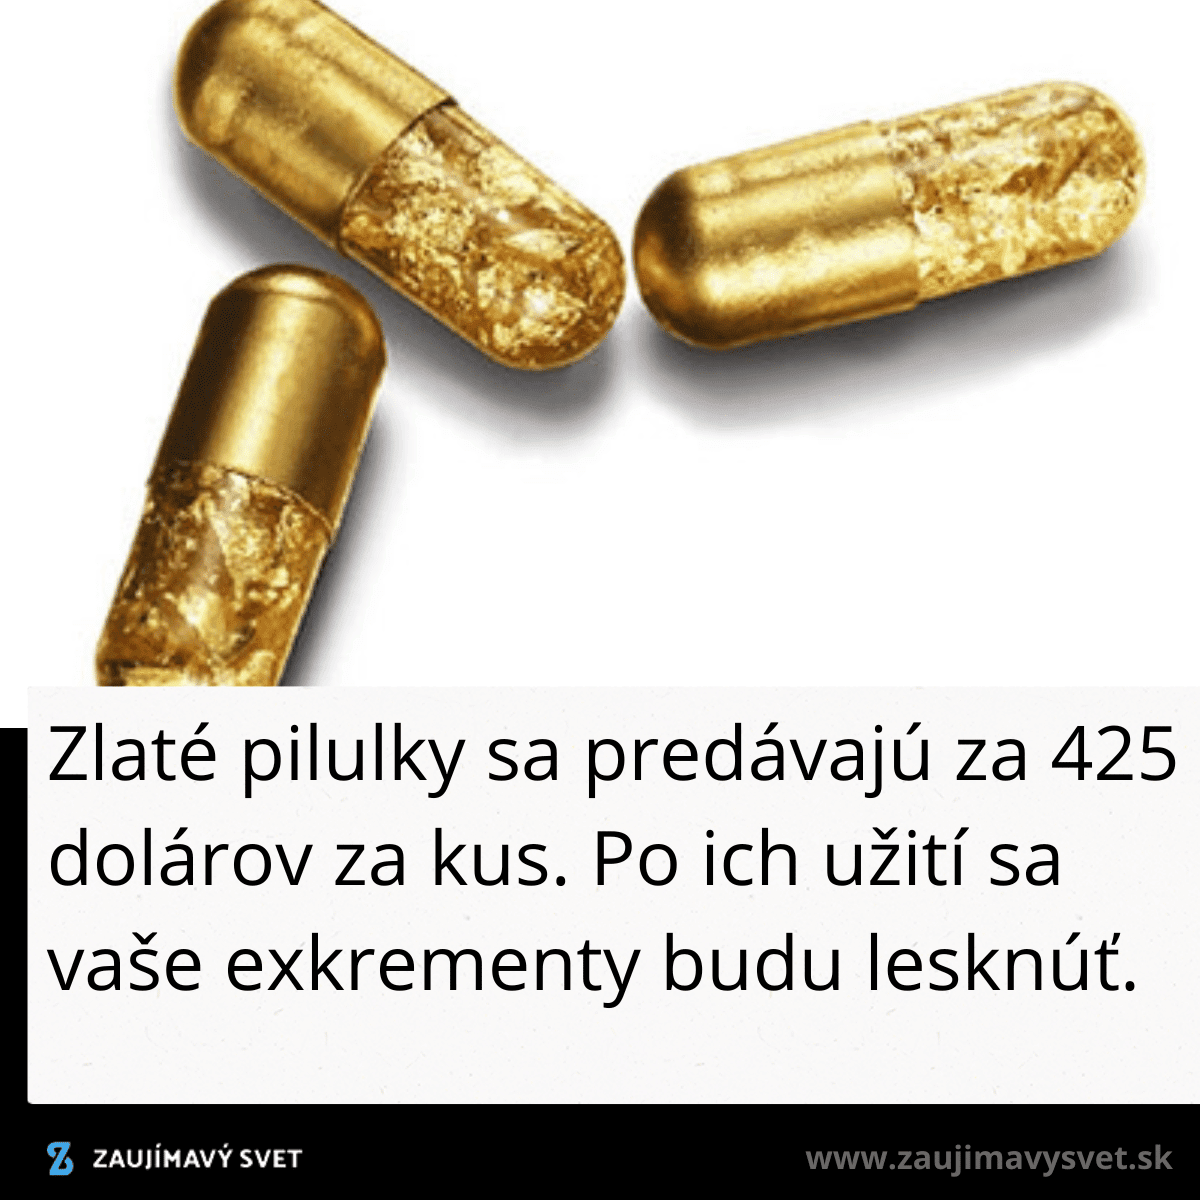 gold pills